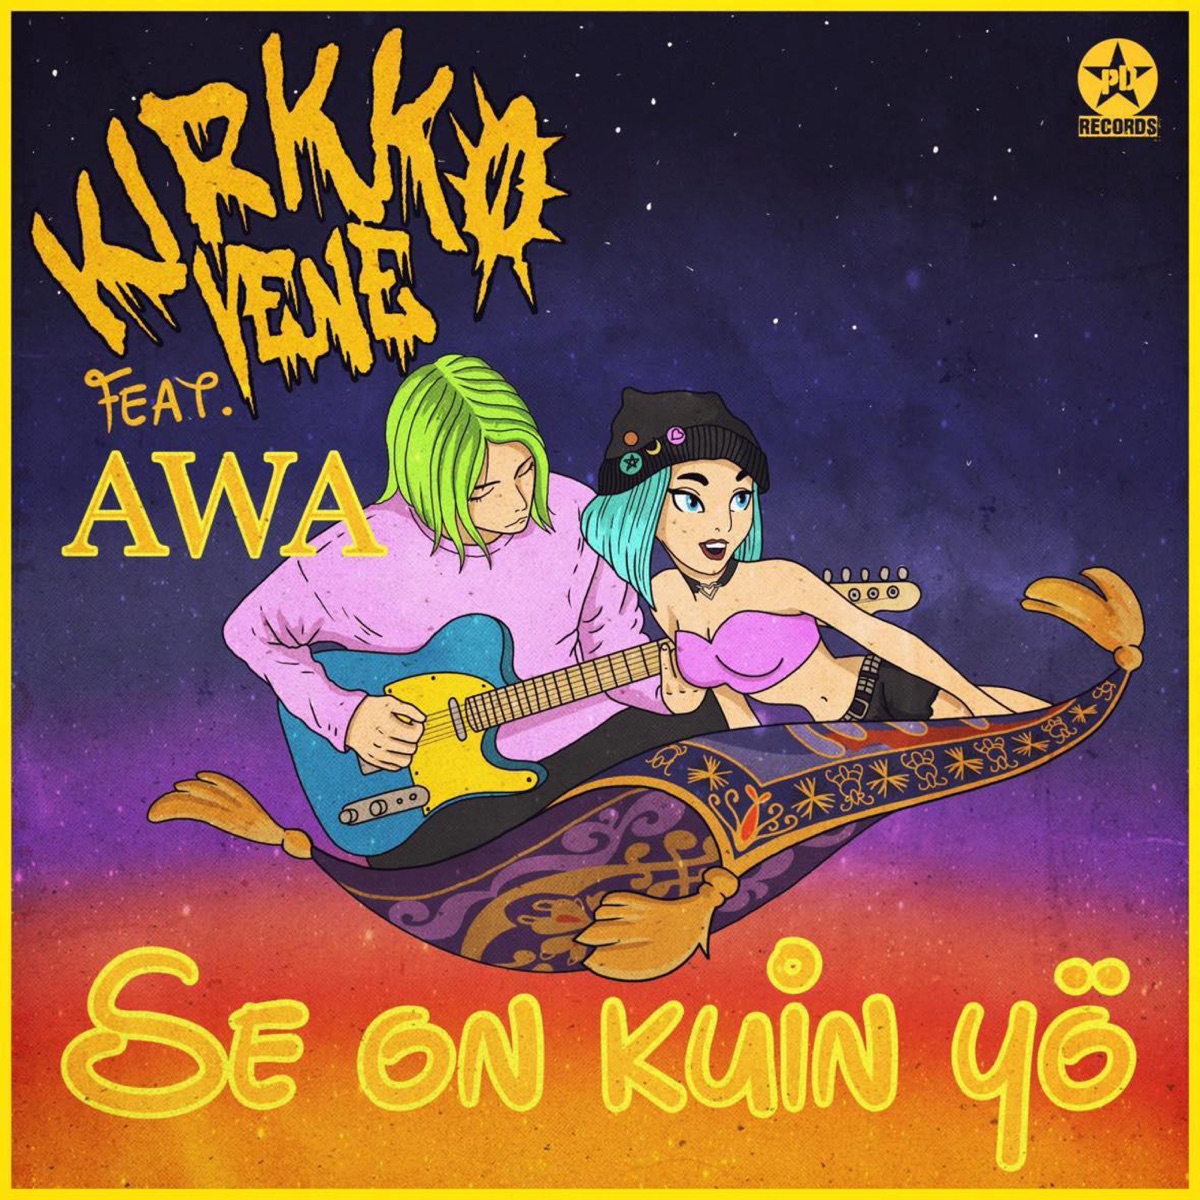 Se on kuin yö (feat. AWA) - Single - Album by Kirkkovene - Apple Music